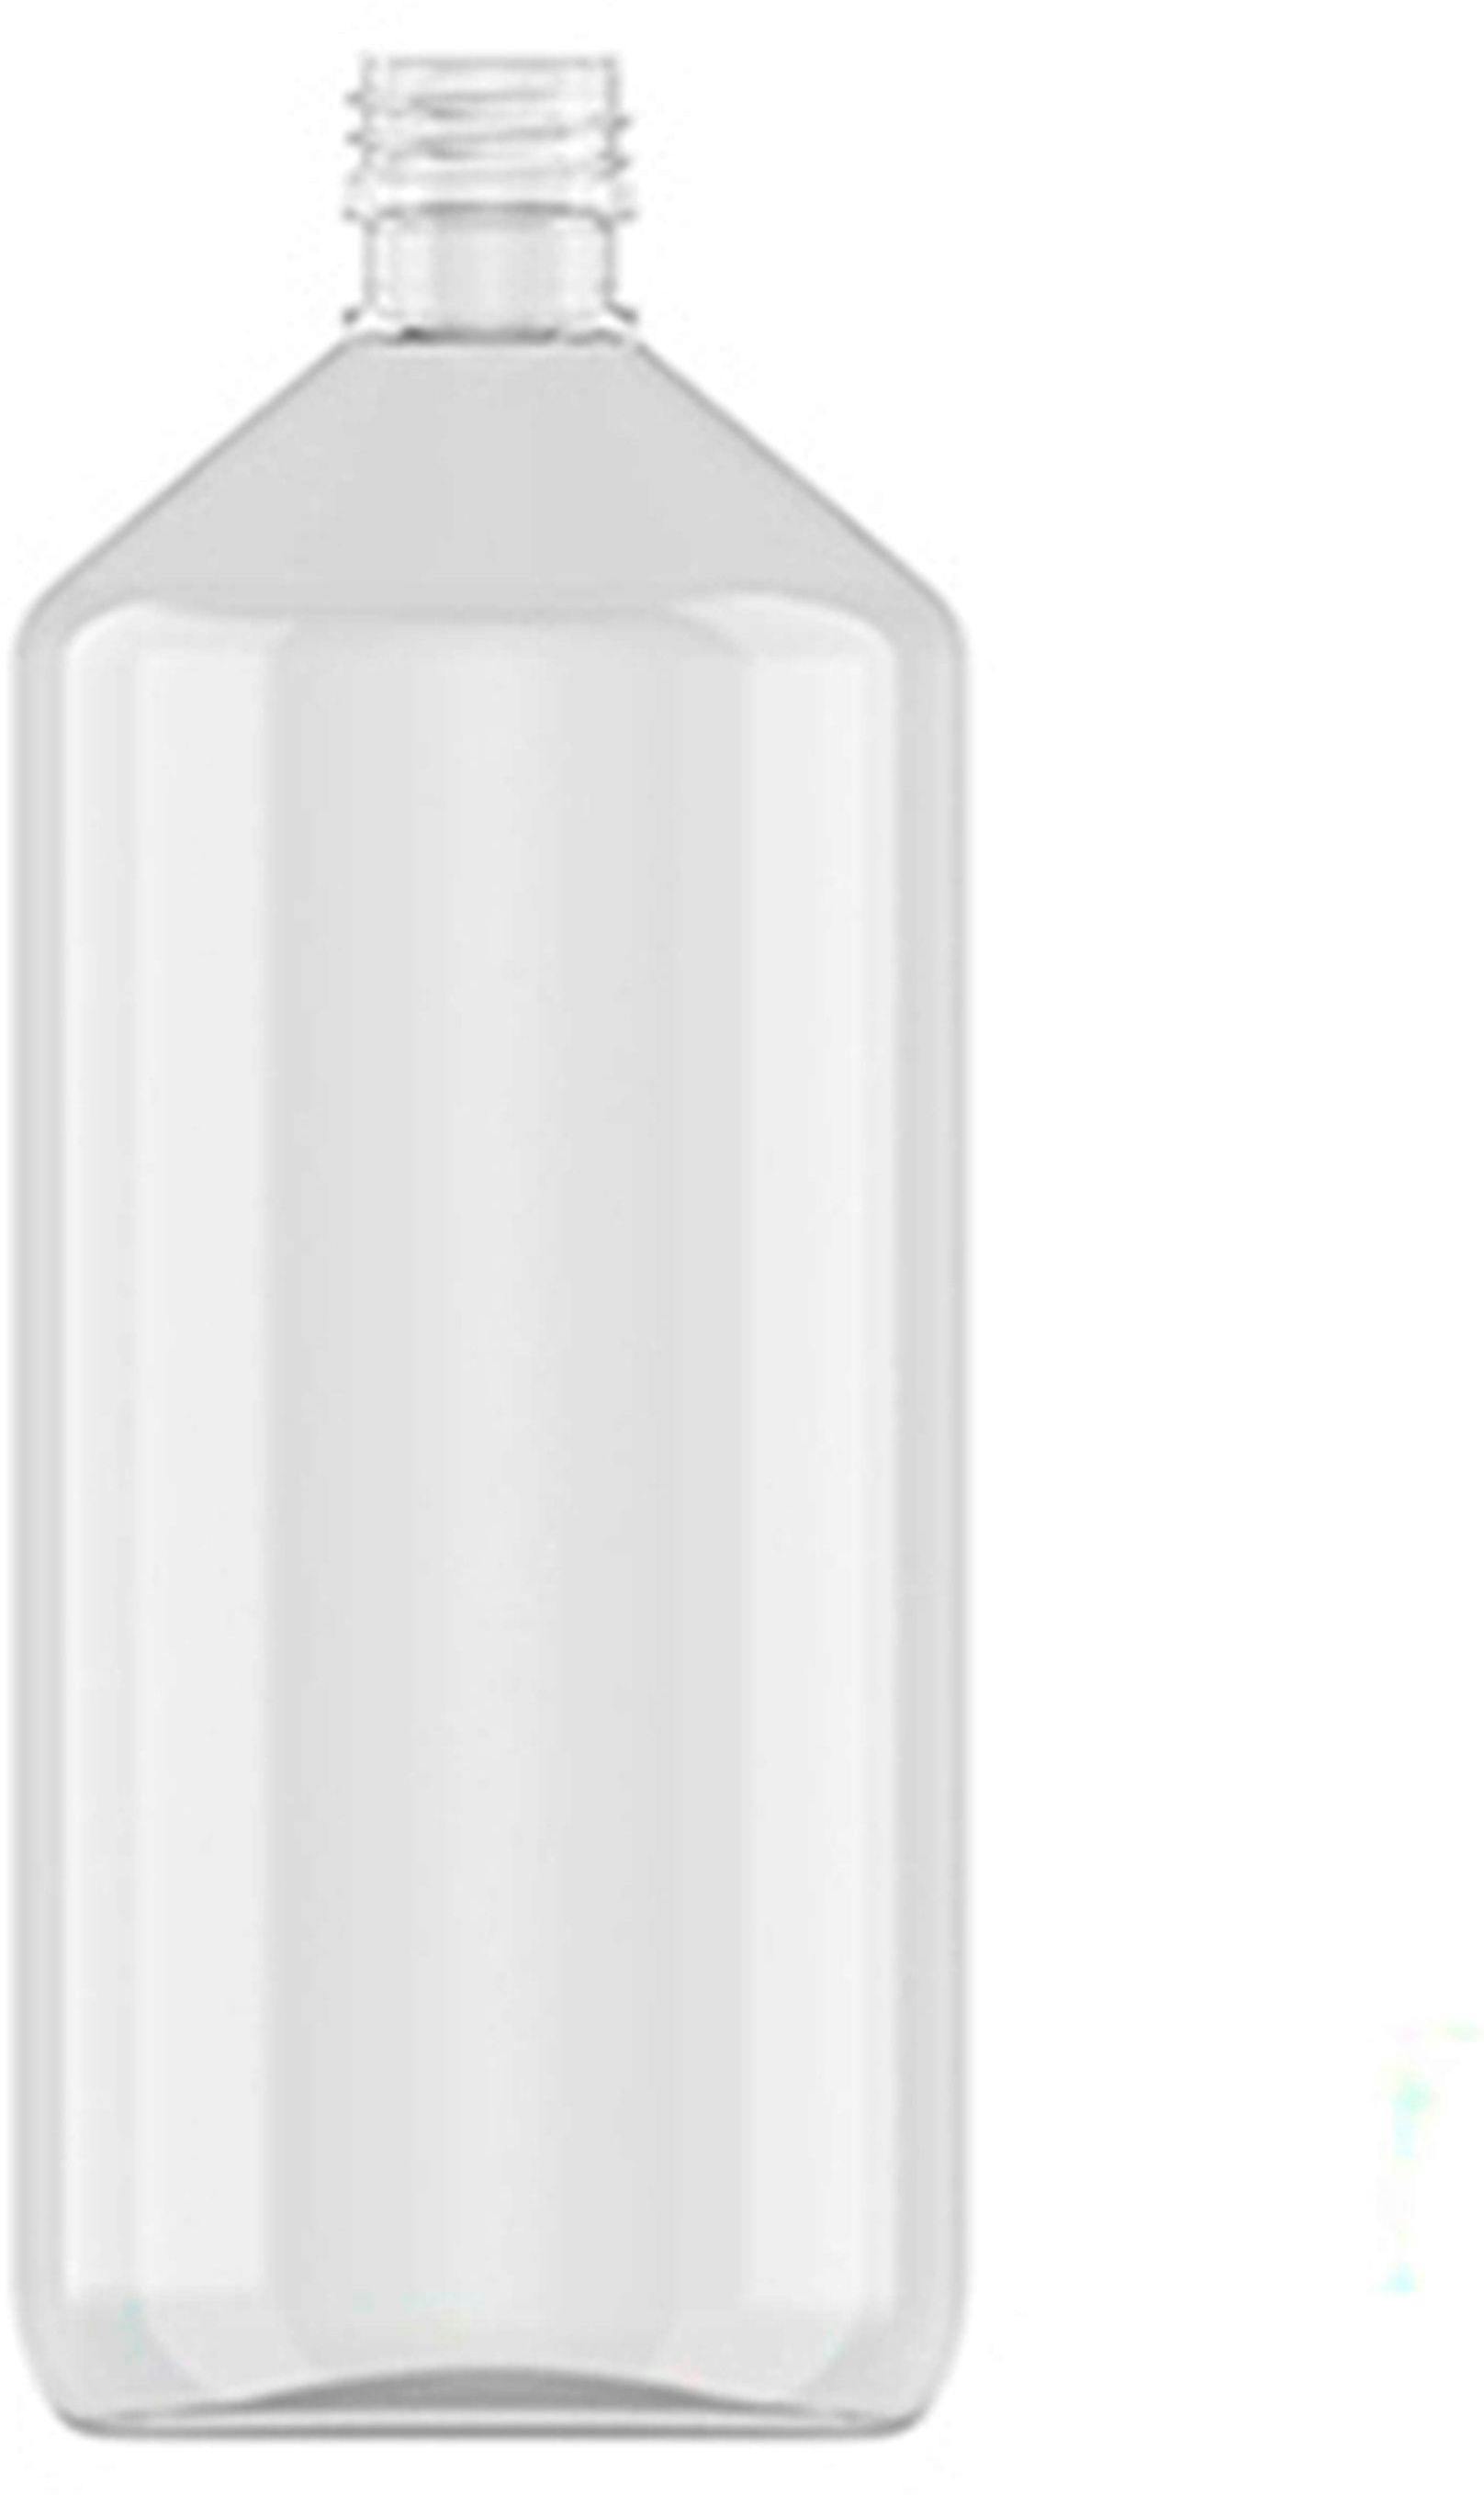 Bottle PET 1 liter Transparent veral d28